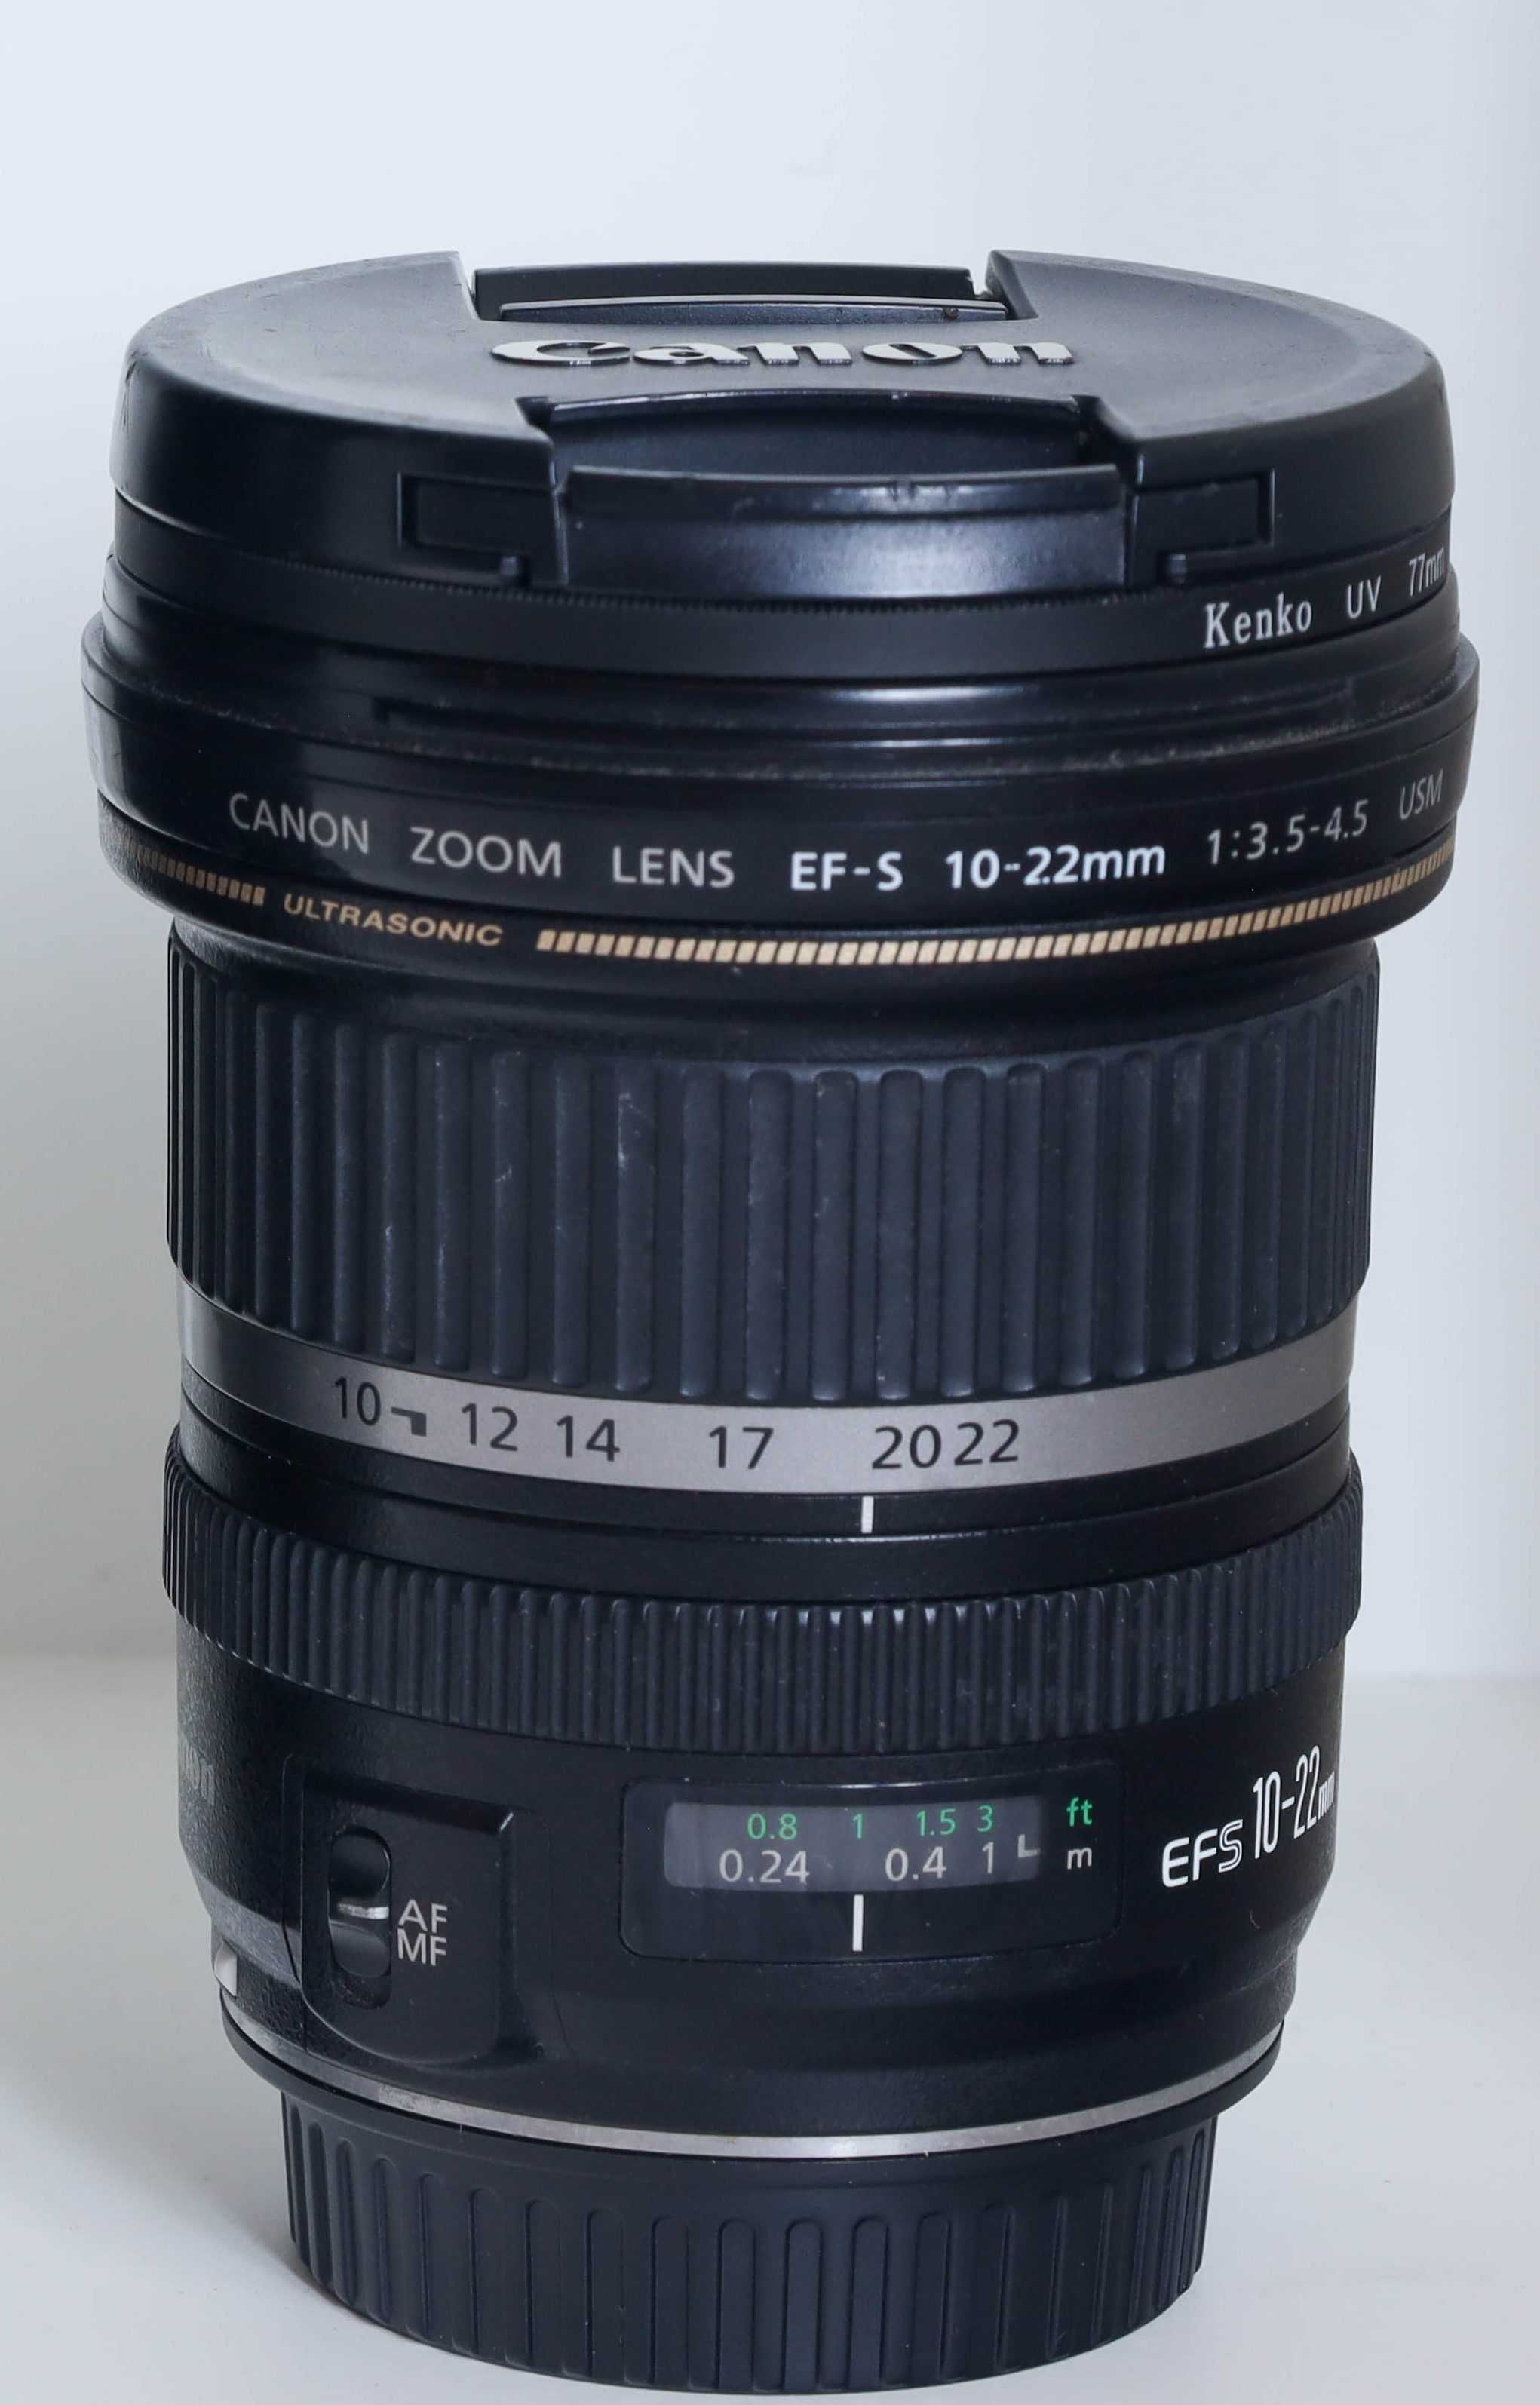 Топ Оферта! Широк Фотообектив Canon EF-S 10-22mm, 1:3.5-4.5 USM